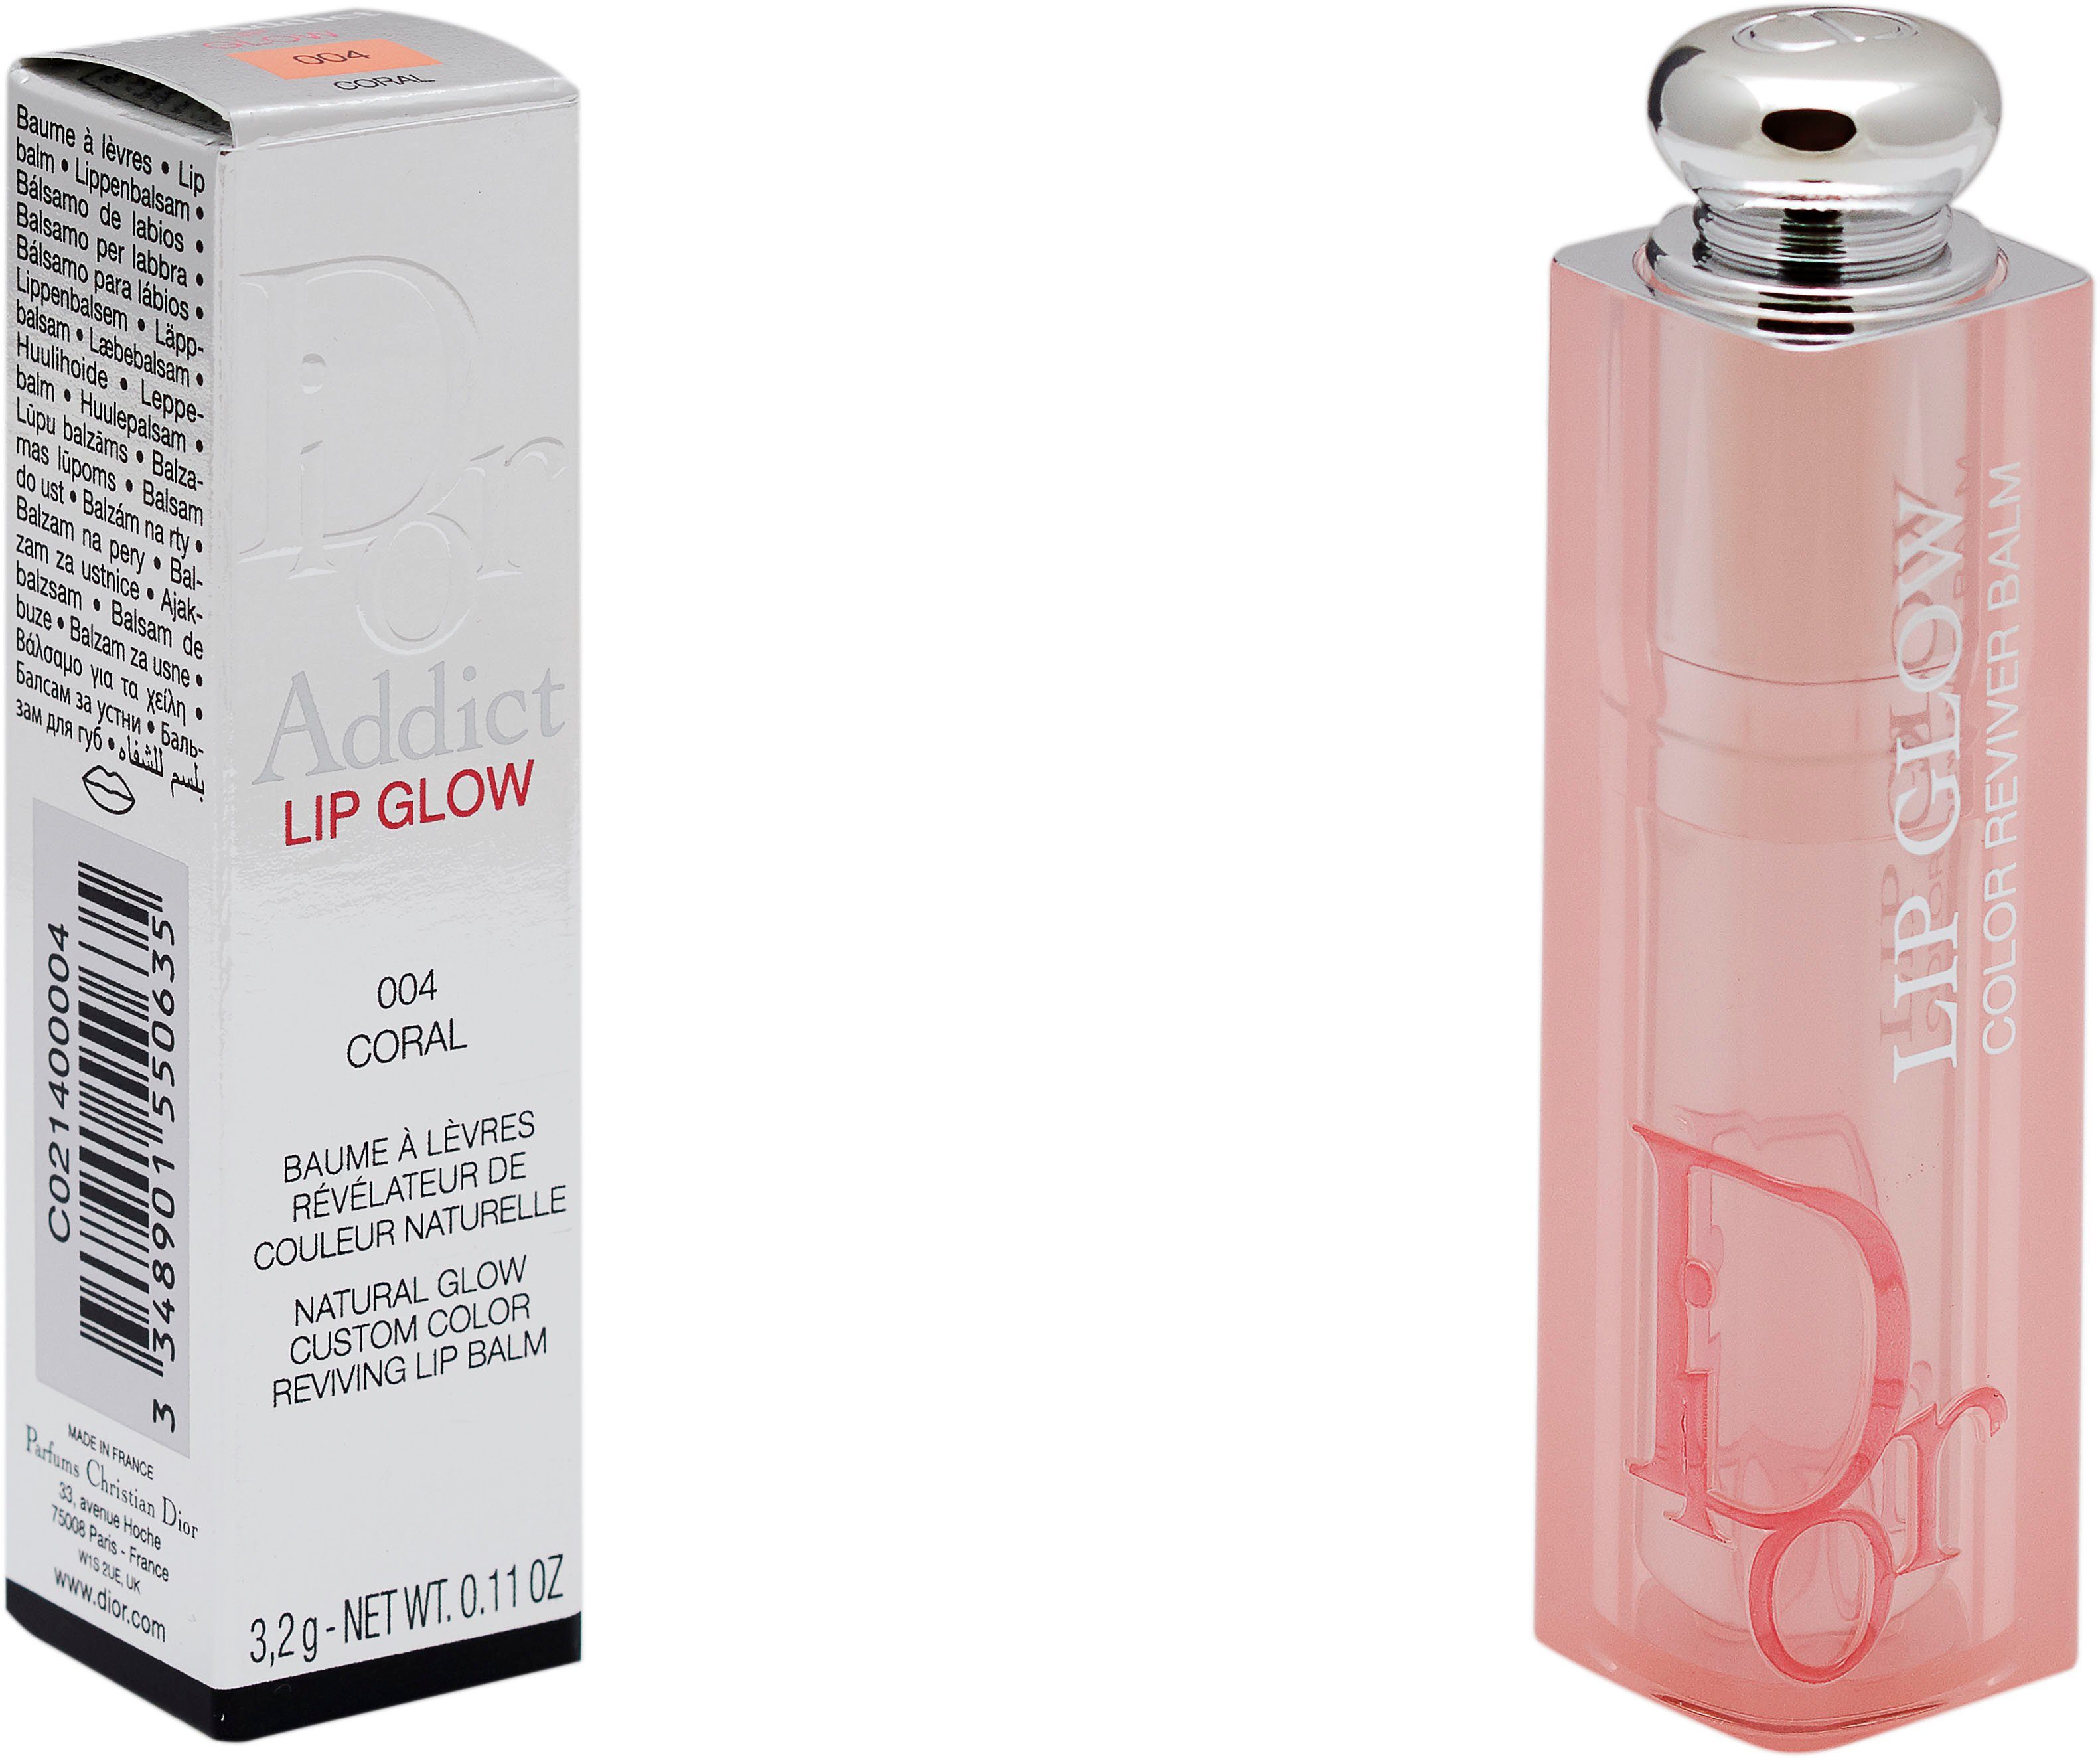 Glow 004 Lip Dior Dior Addict Lippenbalsam Coral